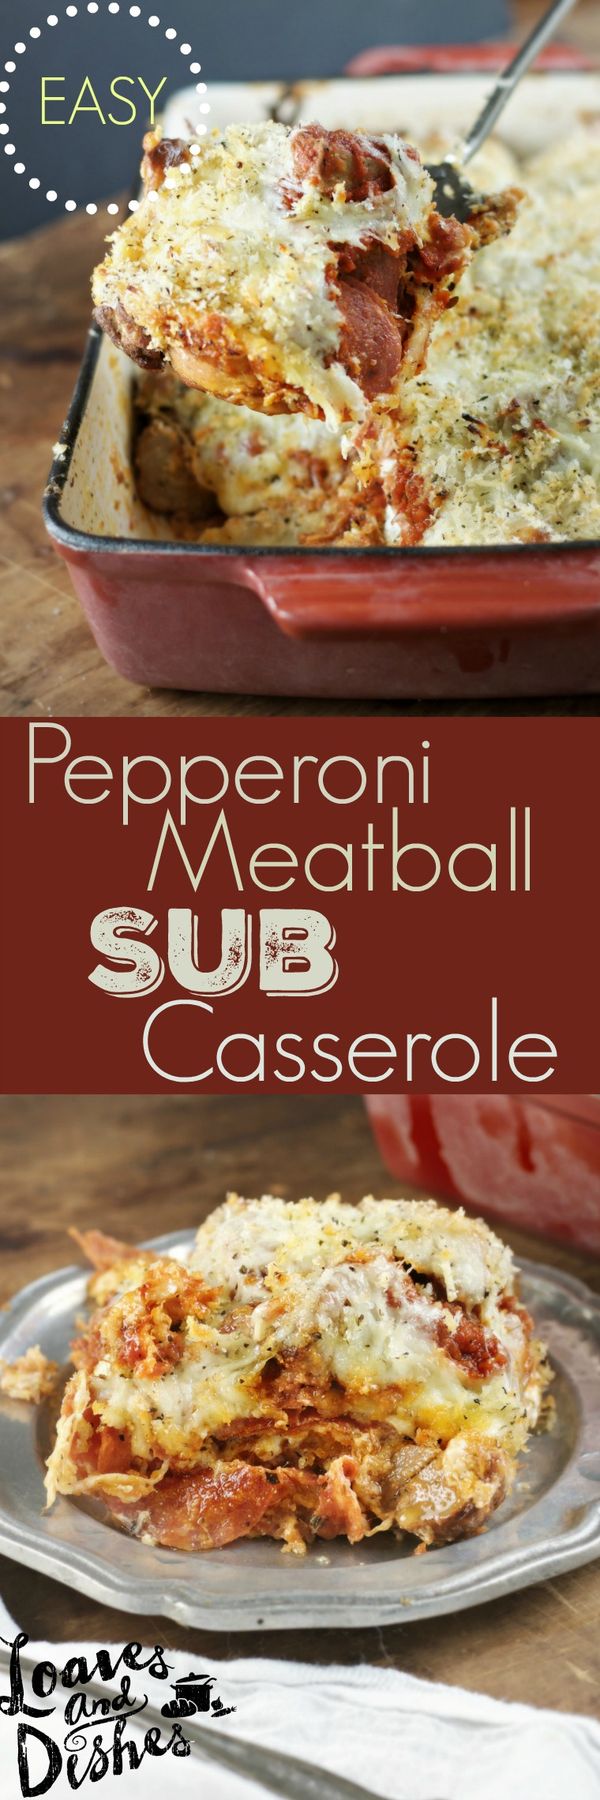 Pepperoni Meatball Sub Casserole